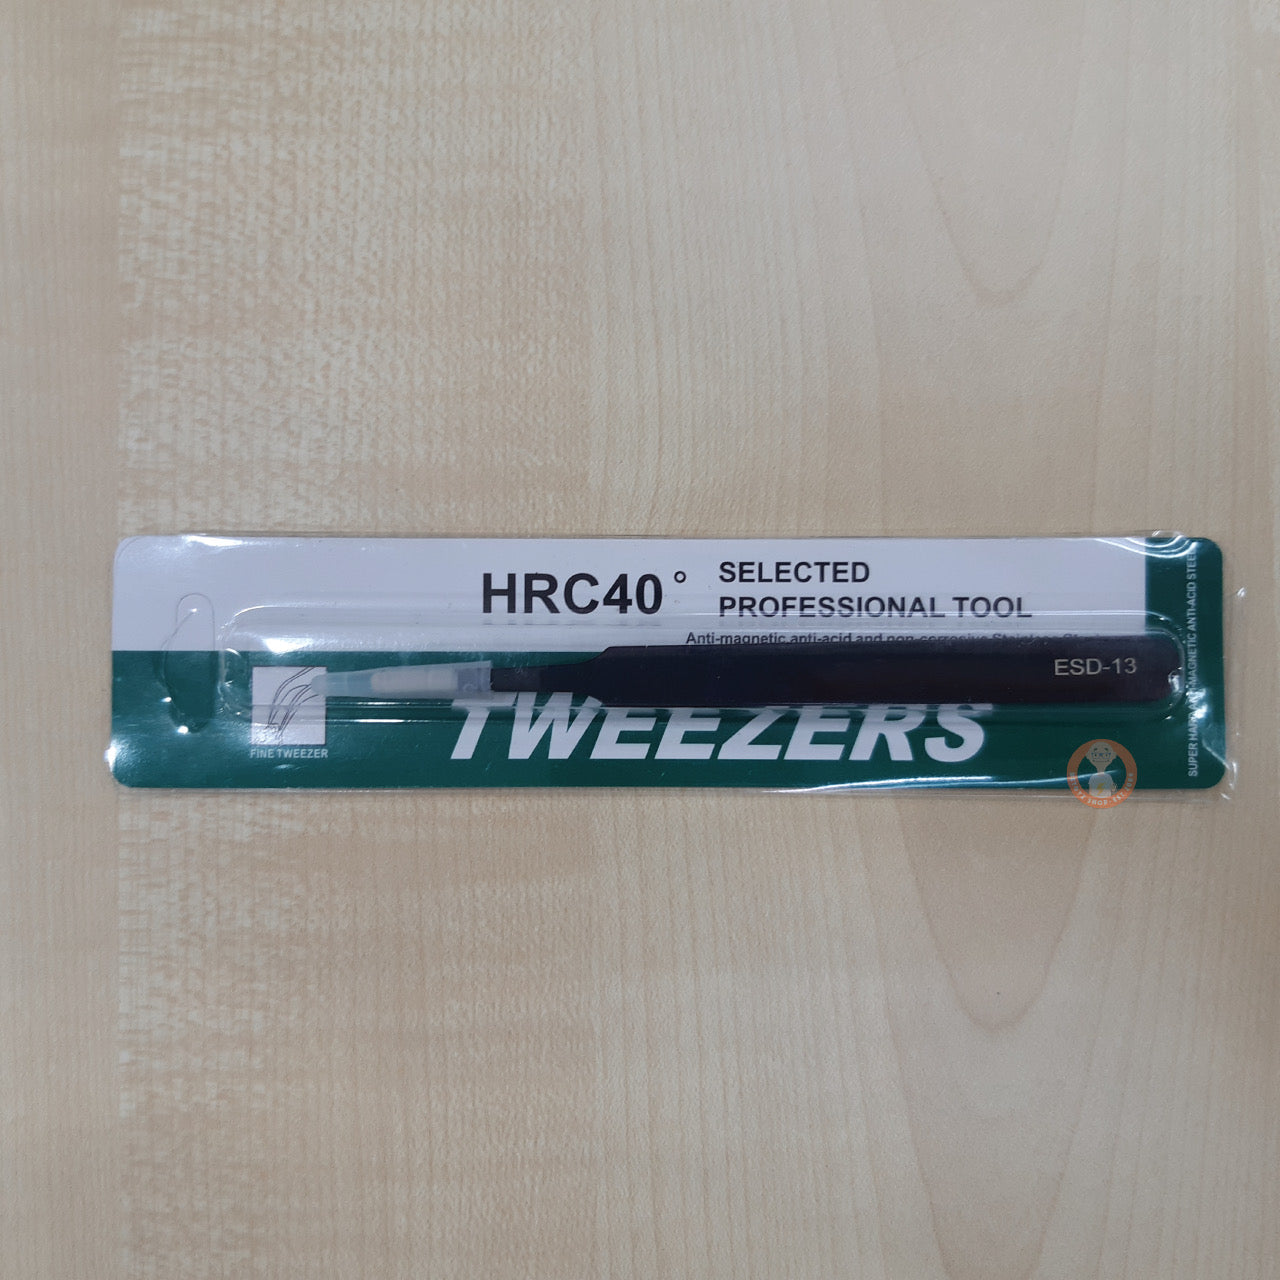 HRC40 Tweezers